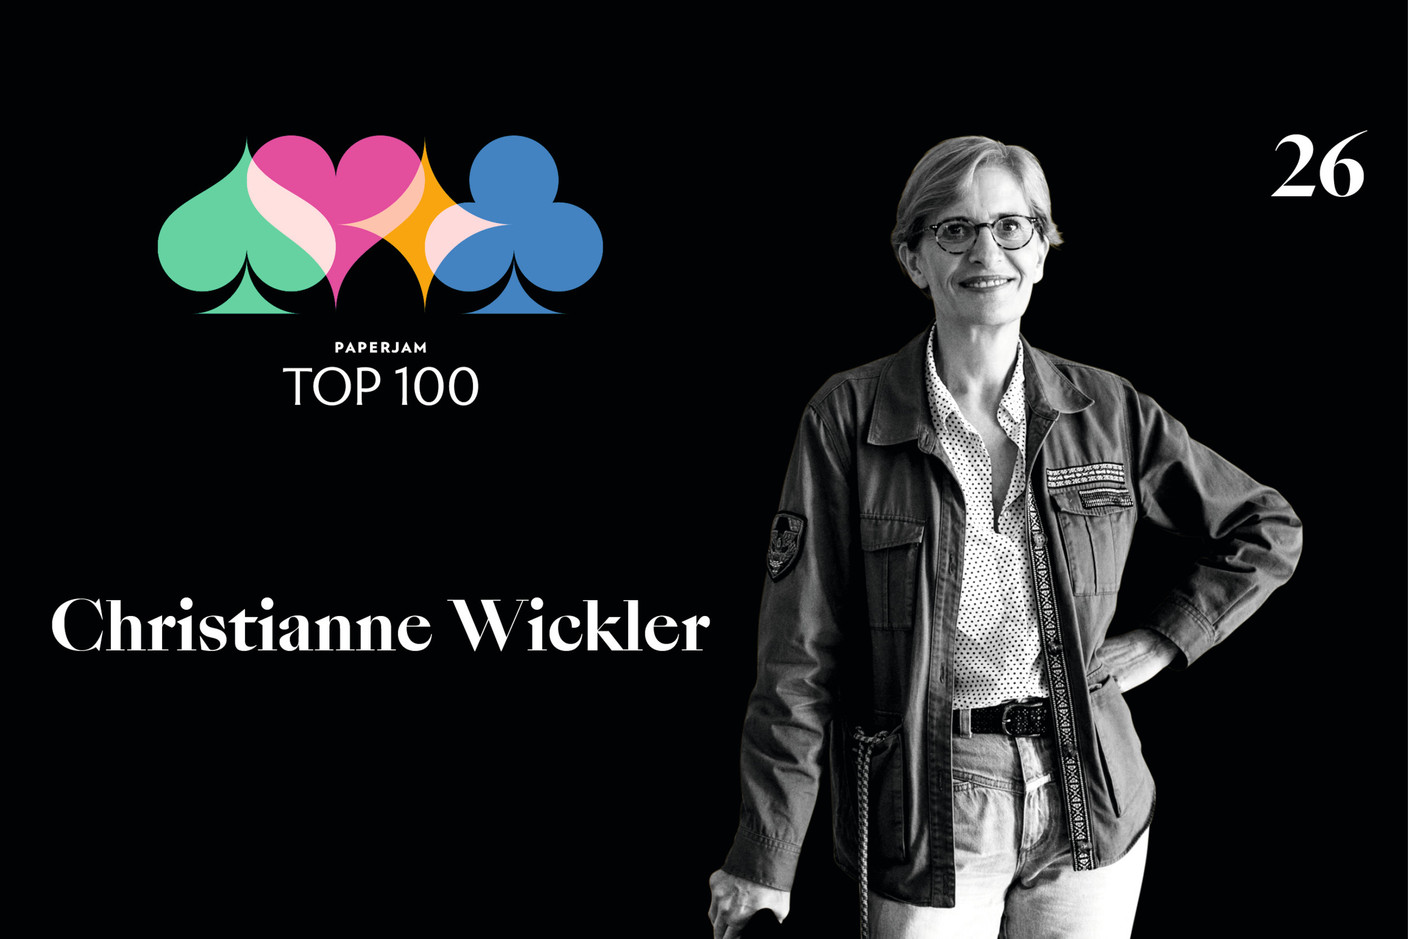 Christianne Wickler, 26e du Paperjam Top 100 2020. (Illustration: Maison Moderne)